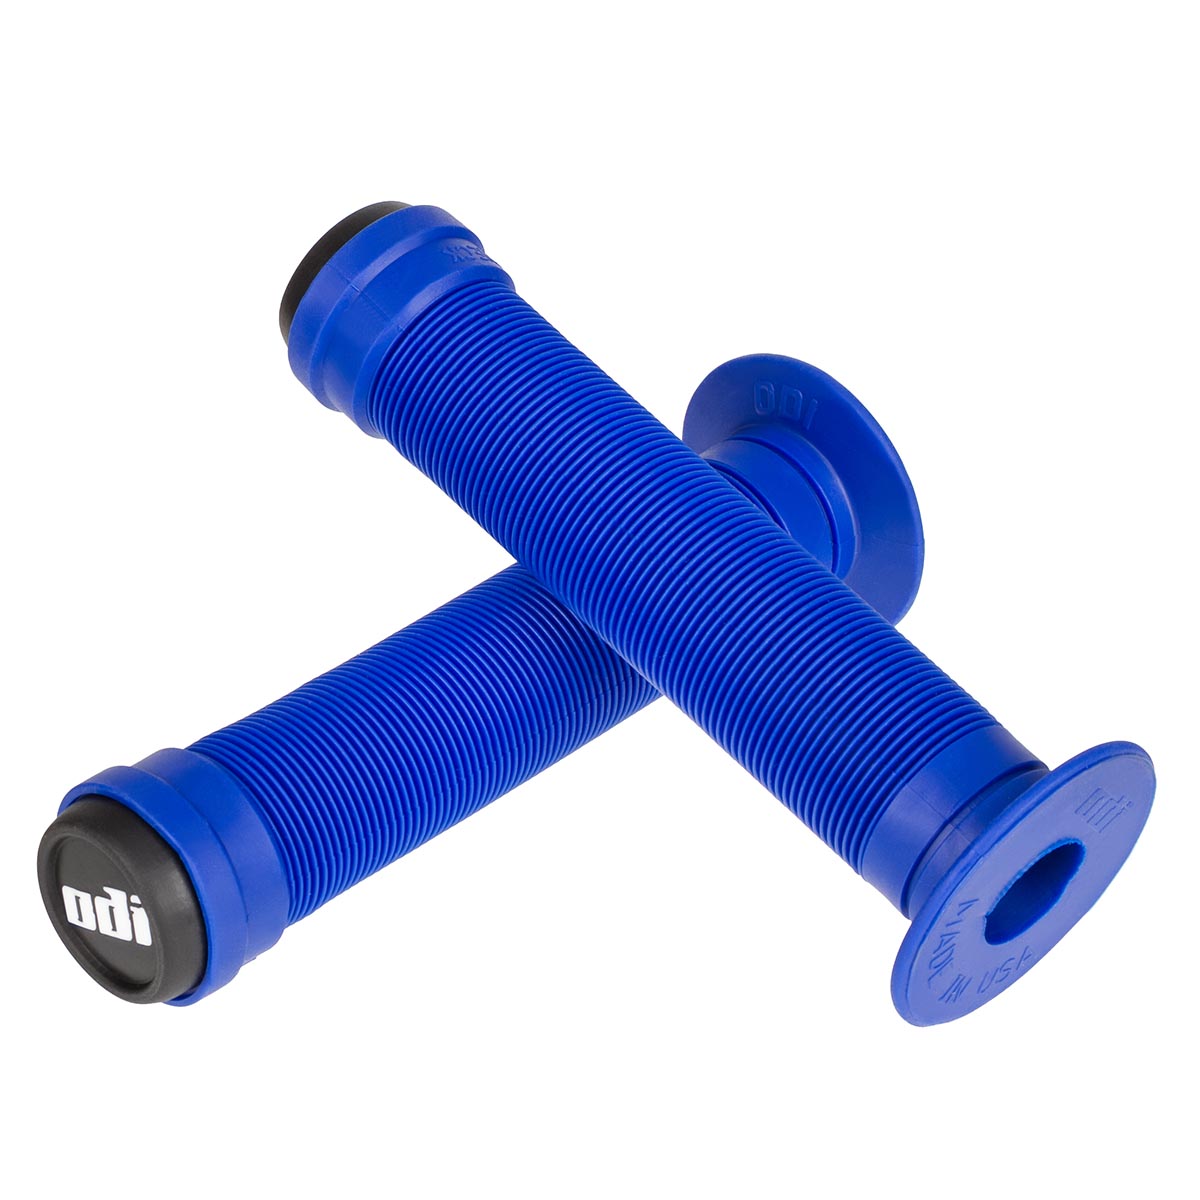 ODI MTB Grips Longneck ST Blue - 143 mm